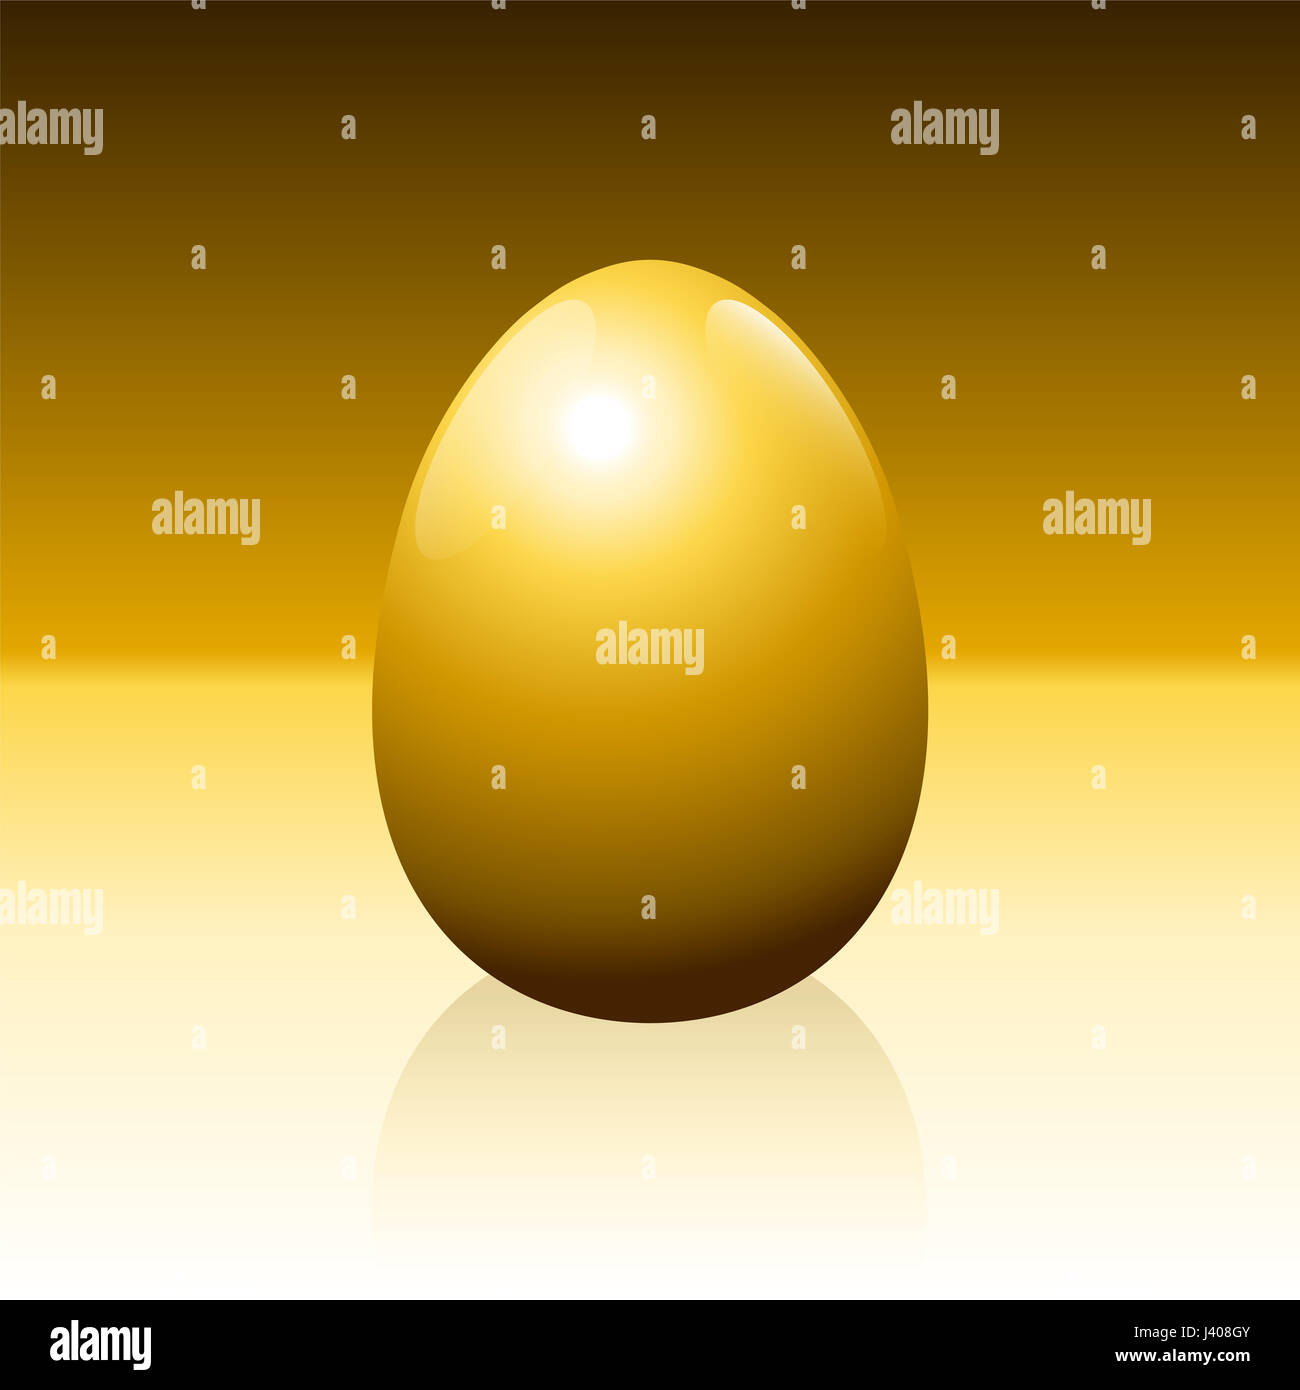 Goldenes Ei auf goldenem Hintergrund - Idiom für Erfolg, Gewinn, Reichtum, finanzielle Glück oder andere lukrative Geschäft Fragen - Illustration. Stockfoto